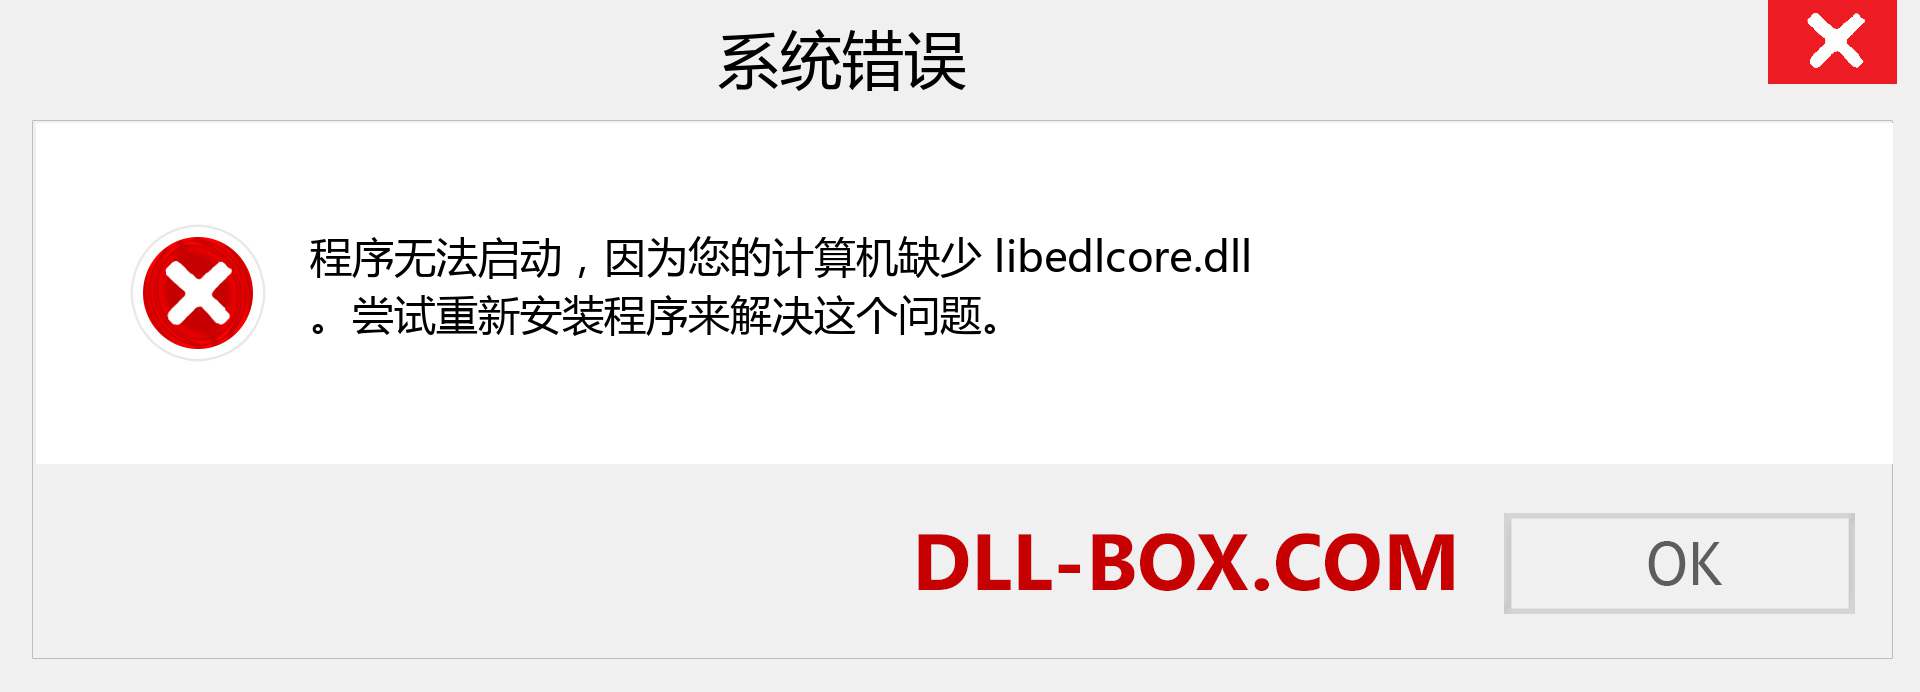 libedlcore.dll 文件丢失？。 适用于 Windows 7、8、10 的下载 - 修复 Windows、照片、图像上的 libedlcore dll 丢失错误